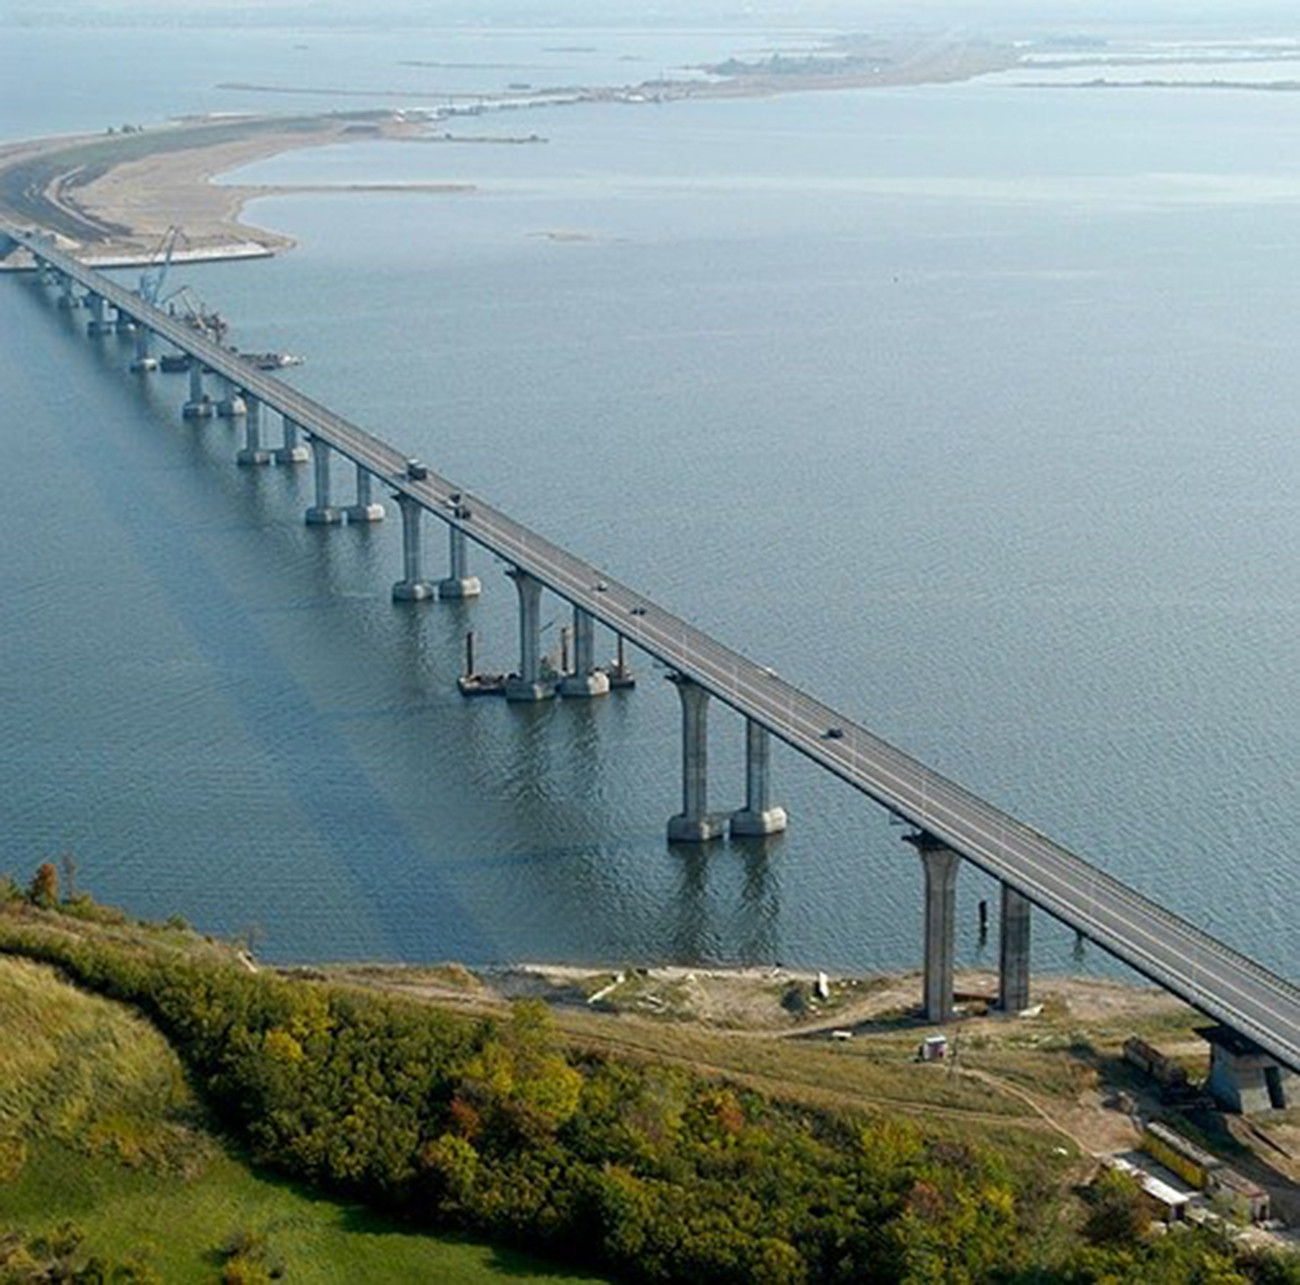 Cây cầu bắc qua sông Kama. Cầu nằm trên quốc lộ R239 nối Kazan với biên giới Kazakhstan. Đây từng là cầu dài nhất Nga, với độ dài gần 14km.